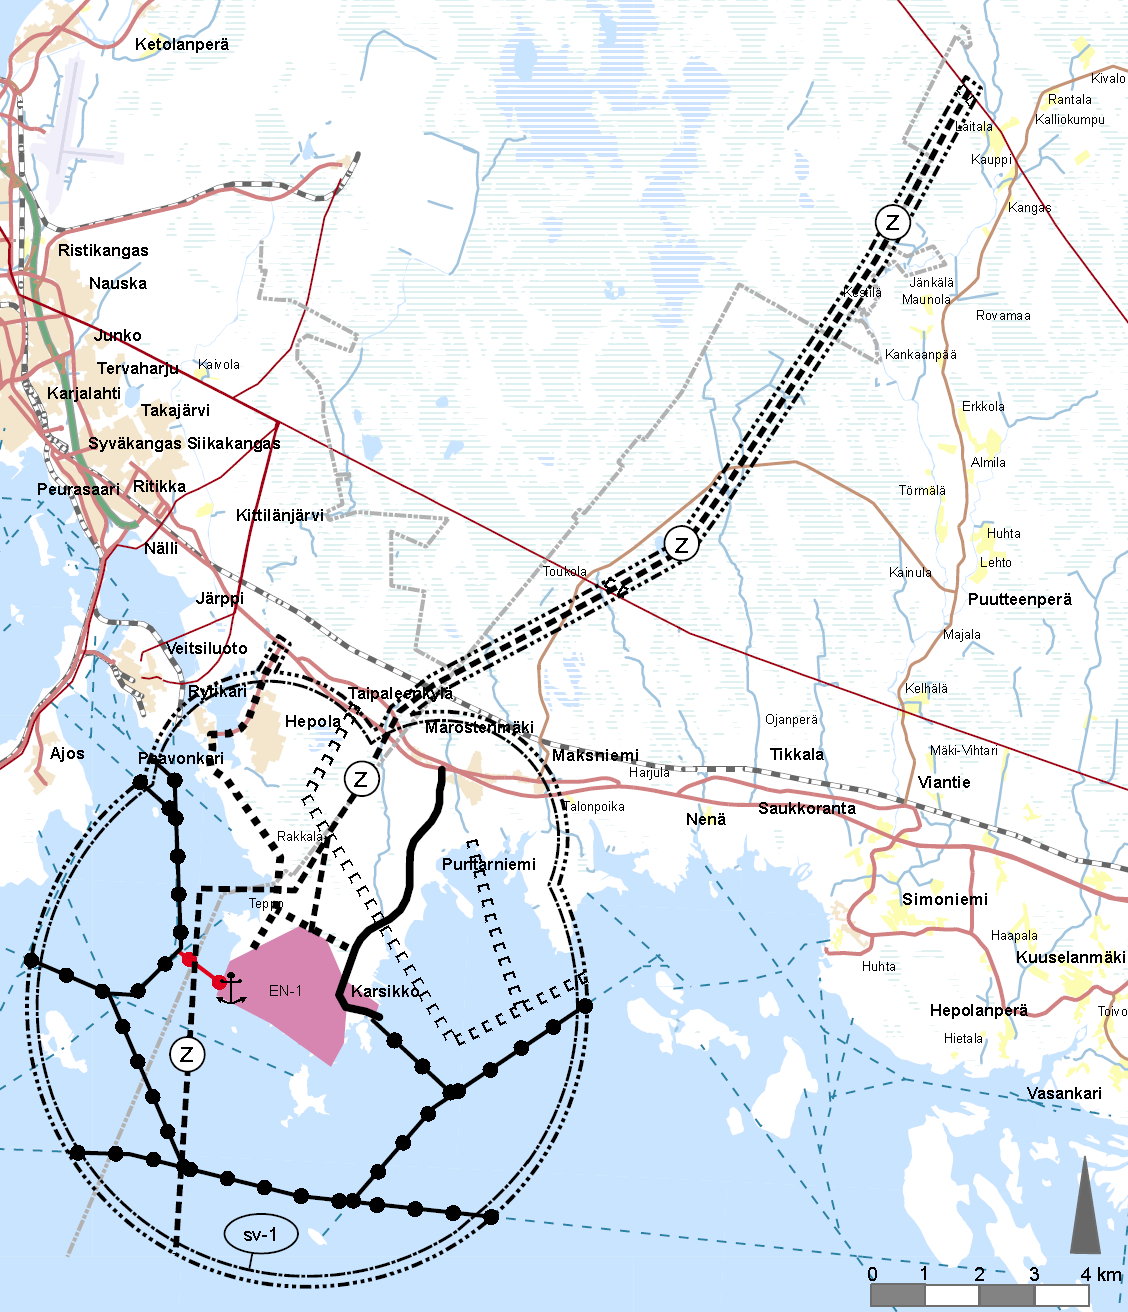 8 Kemi-Tornio alueen ydinvoimamaakuntakaava on saanut lainvoiman 21.9.2011, kun korkein hallinto-oikeus hylkäsi maakuntakaavasta tehdyt valitukset.